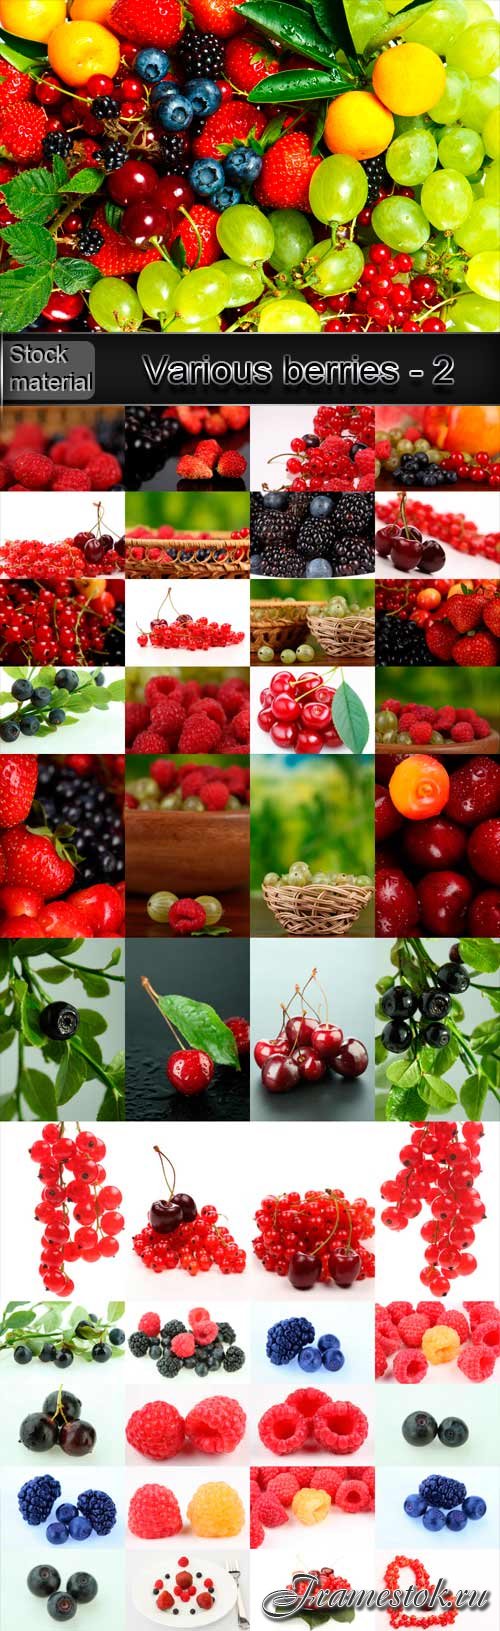 Various berries - 2